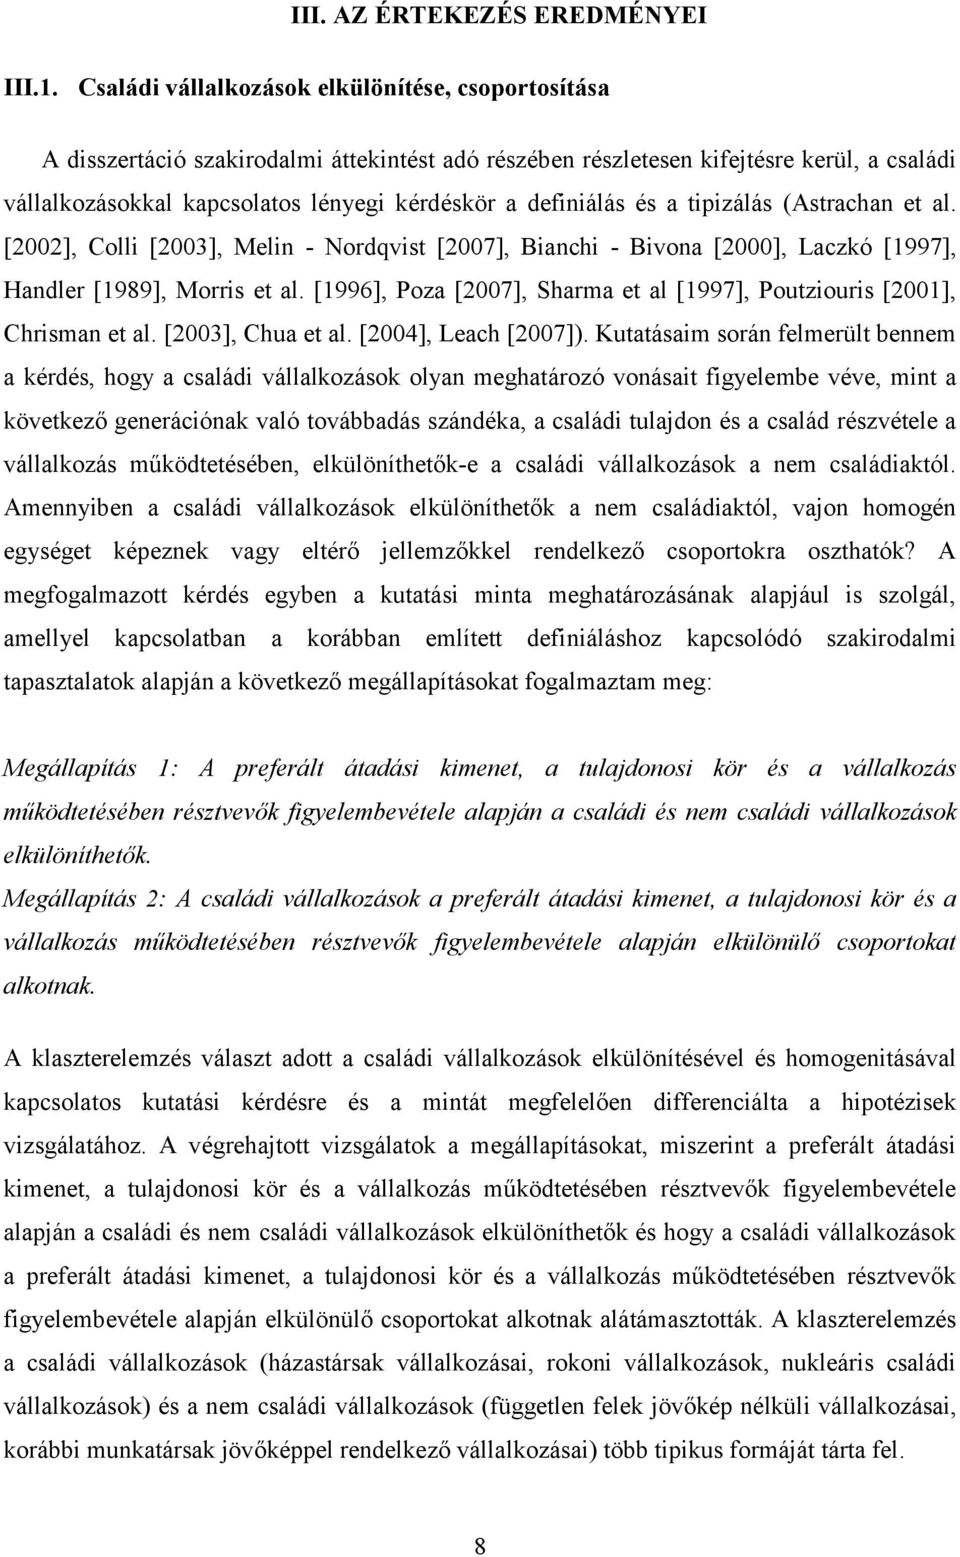 definiálás és a tipizálás (Astrachan et al. [2002], Colli [2003], Melin - Nordqvist [2007], Bianchi - Bivona [2000], Laczkó [1997], Handler [1989], Morris et al.